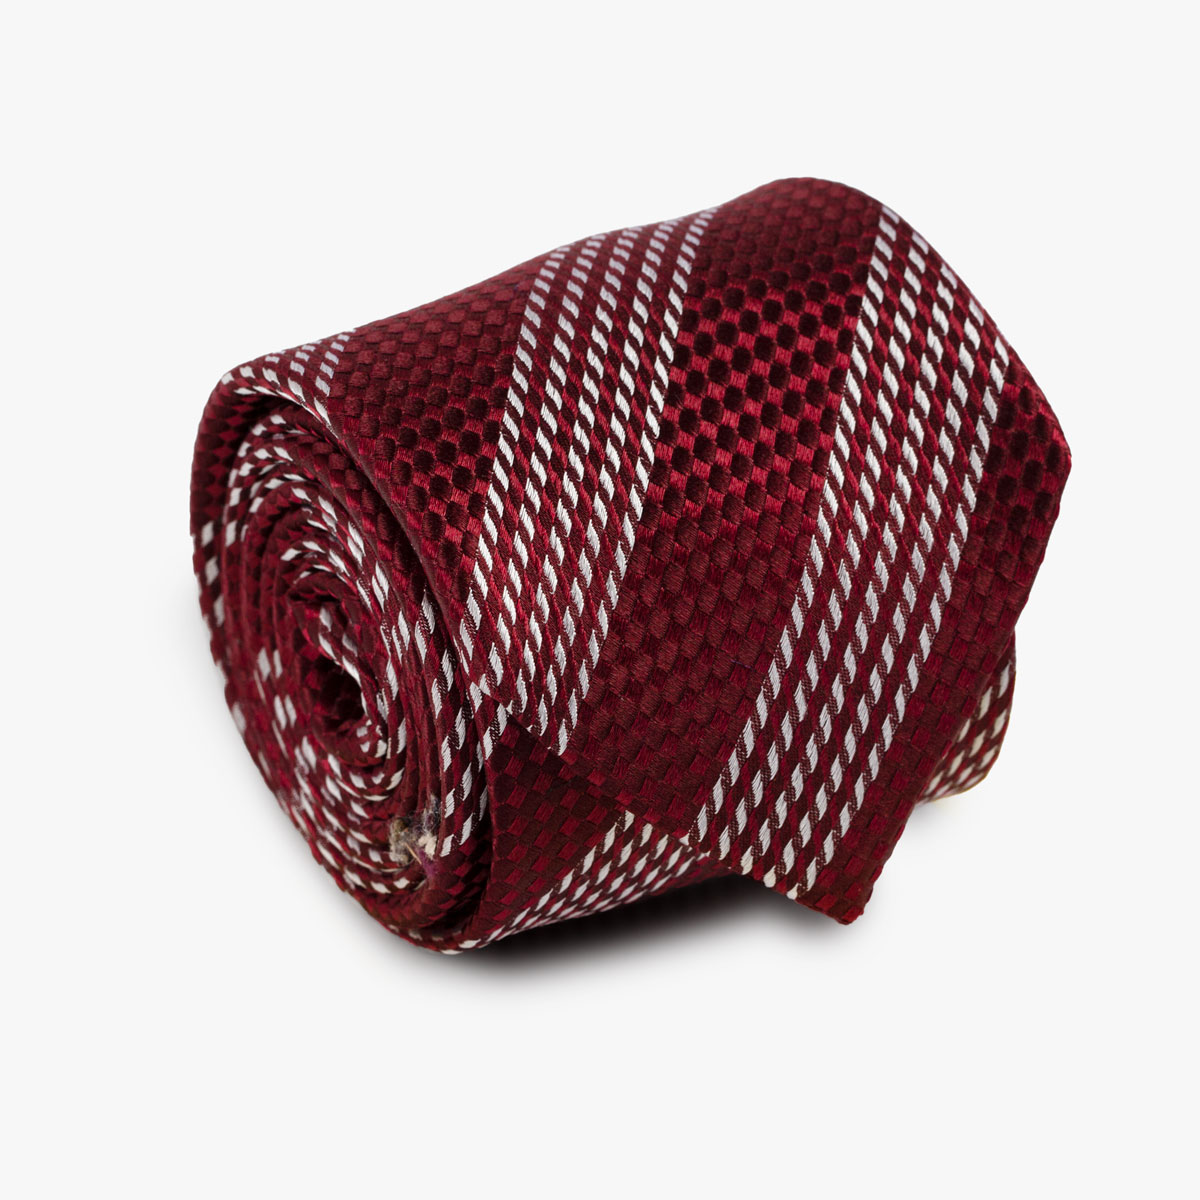 Aufgerollte Krawatte gestreift in rot und weiß